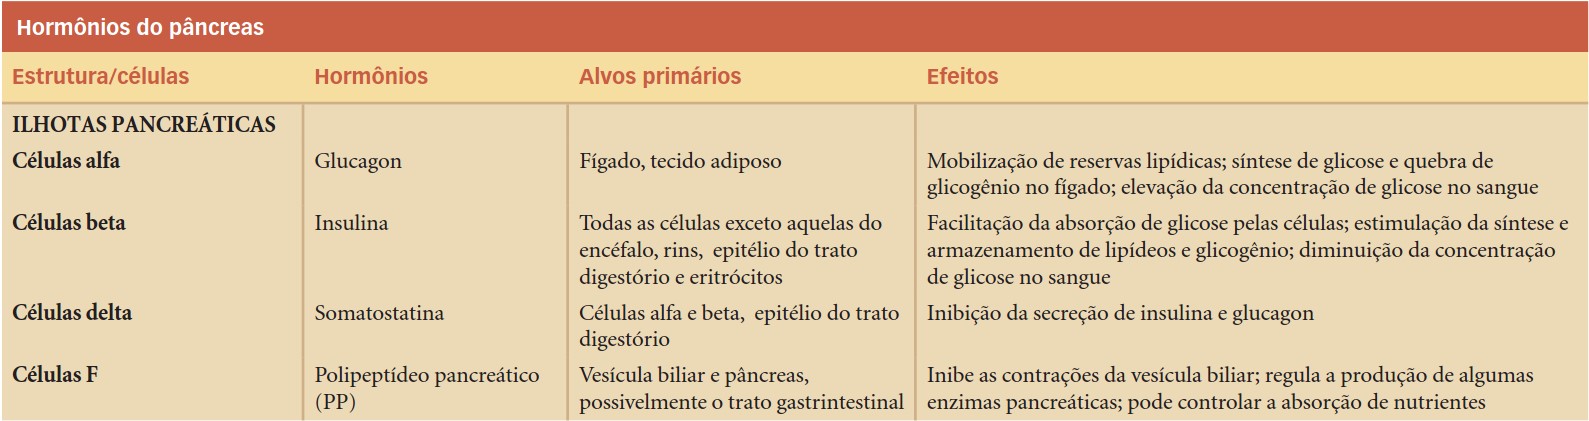 Hormônios do pâncreas endócrino (ilhotas pancreáticas ou ilhotas de Langerhans.